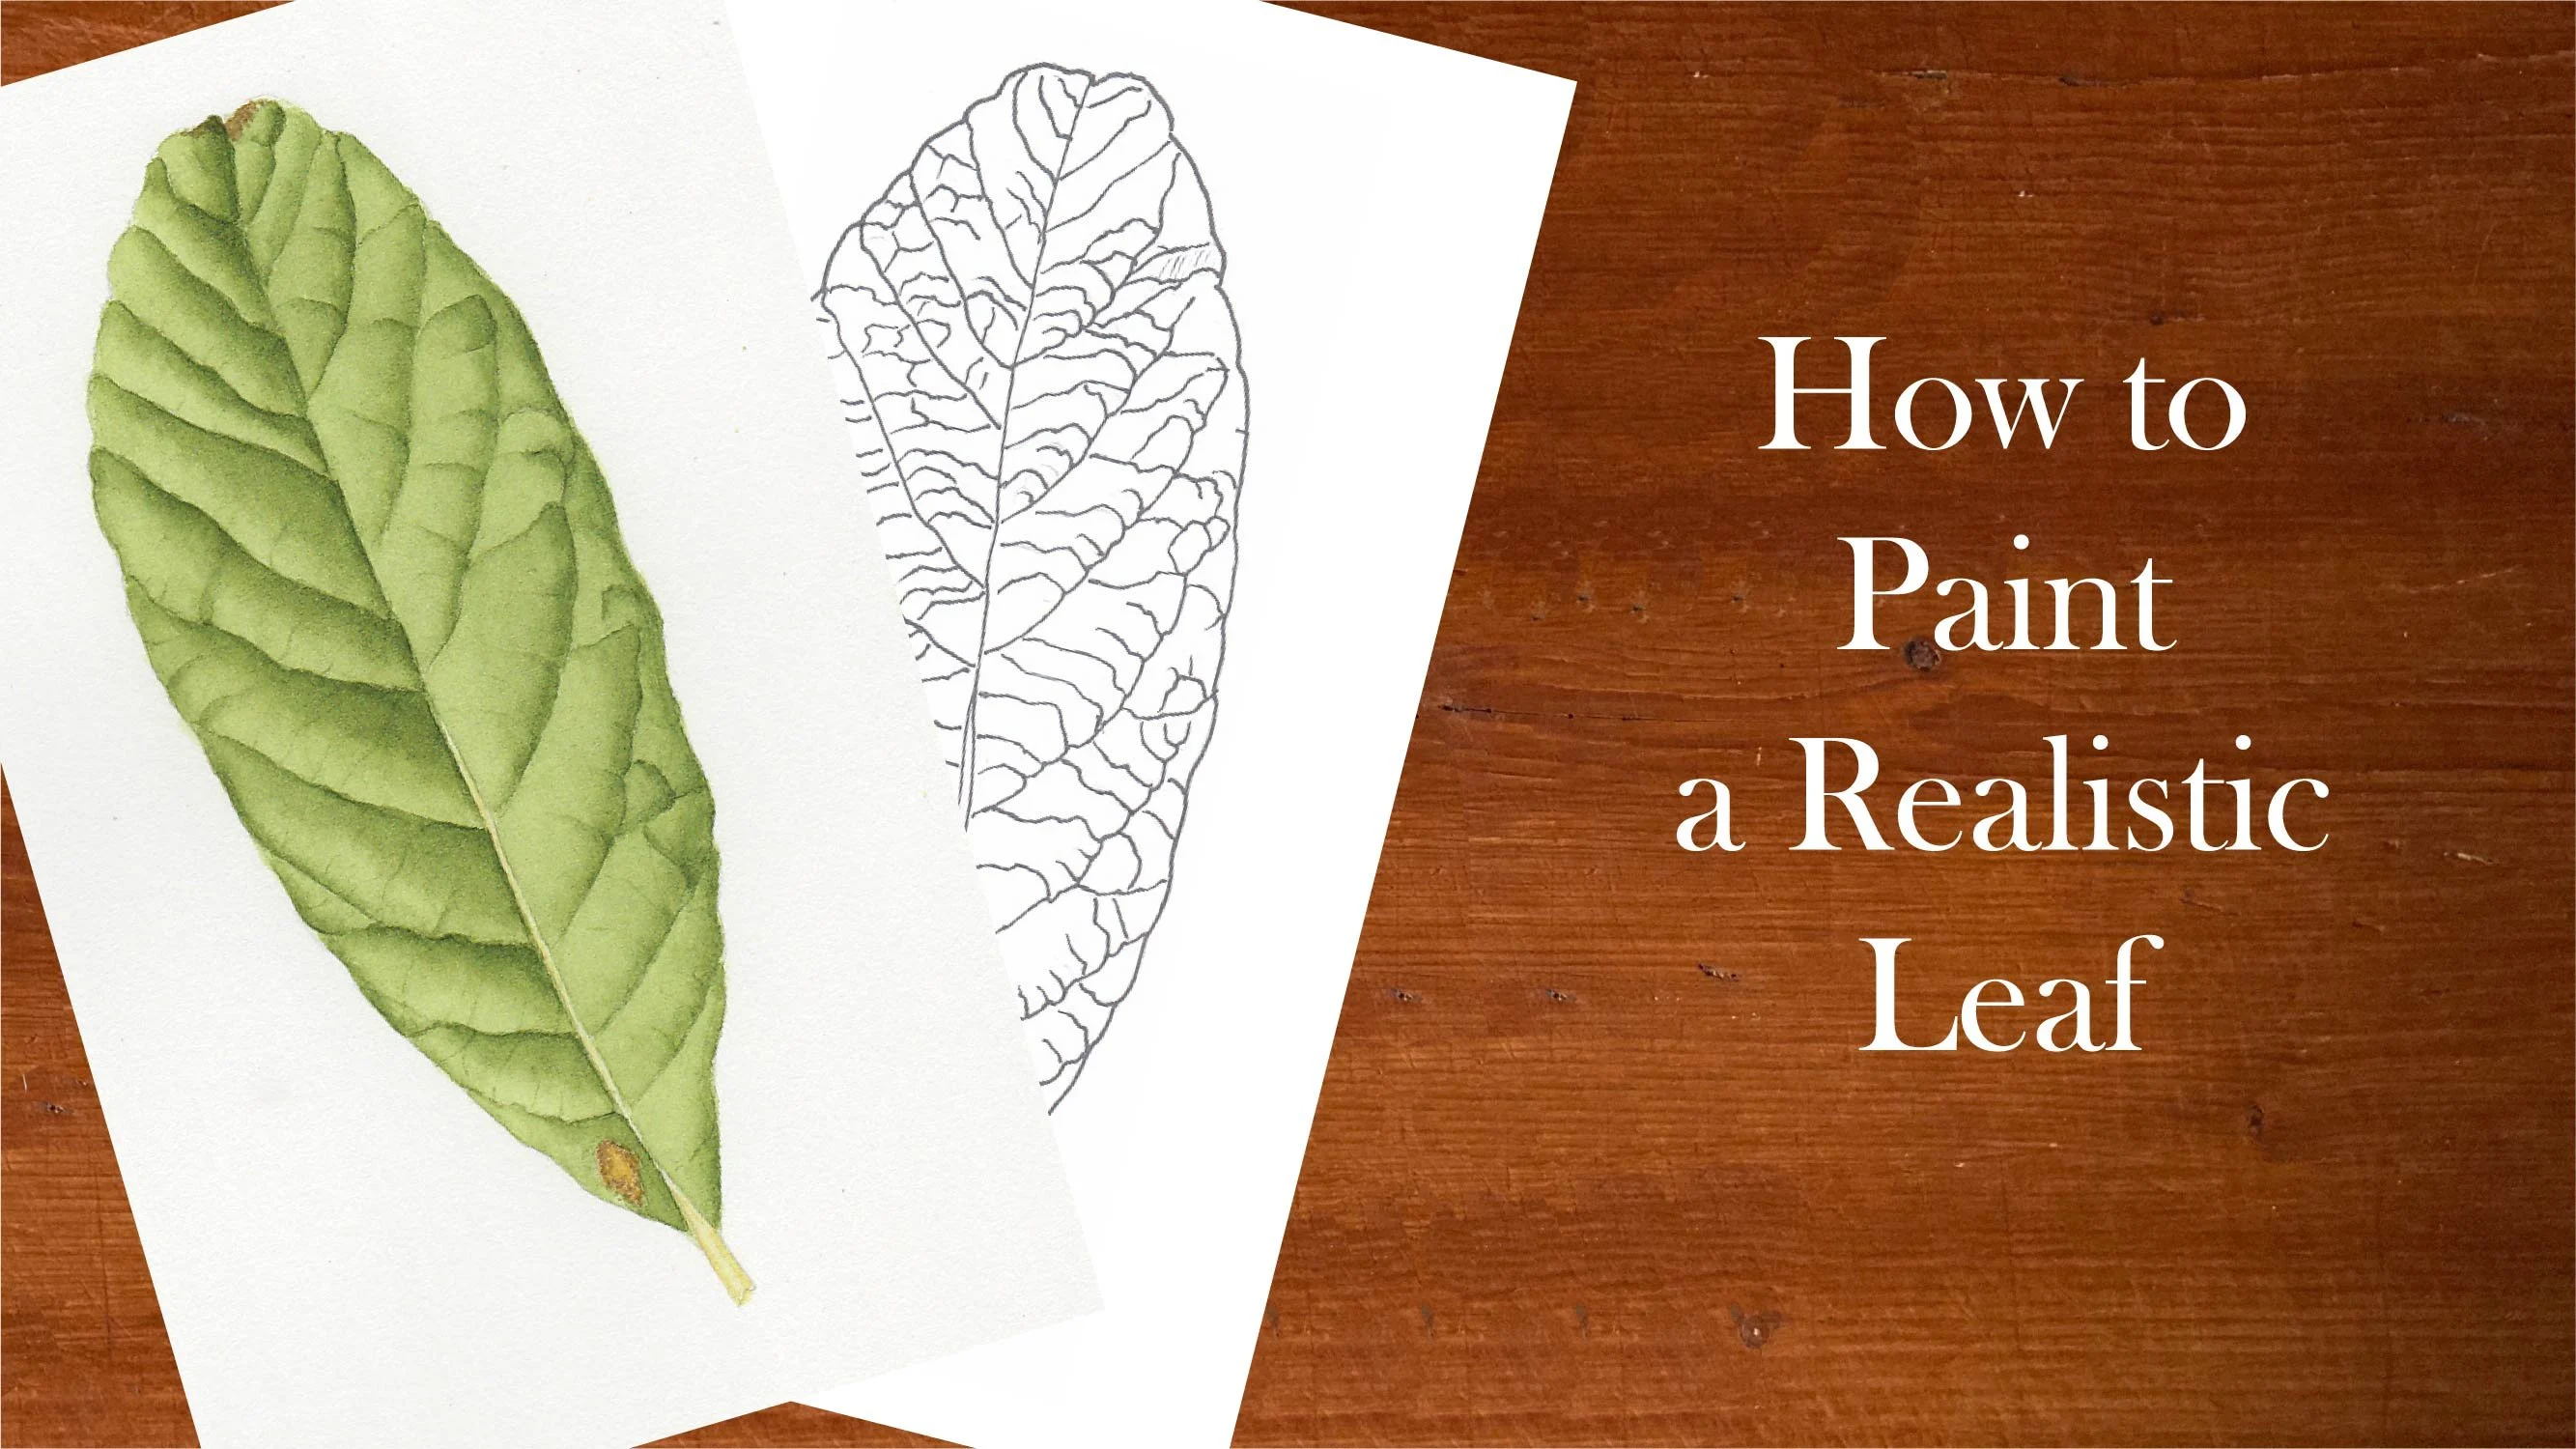 آموزش چگونه یک برگ واقعی را نقاشی کنیم